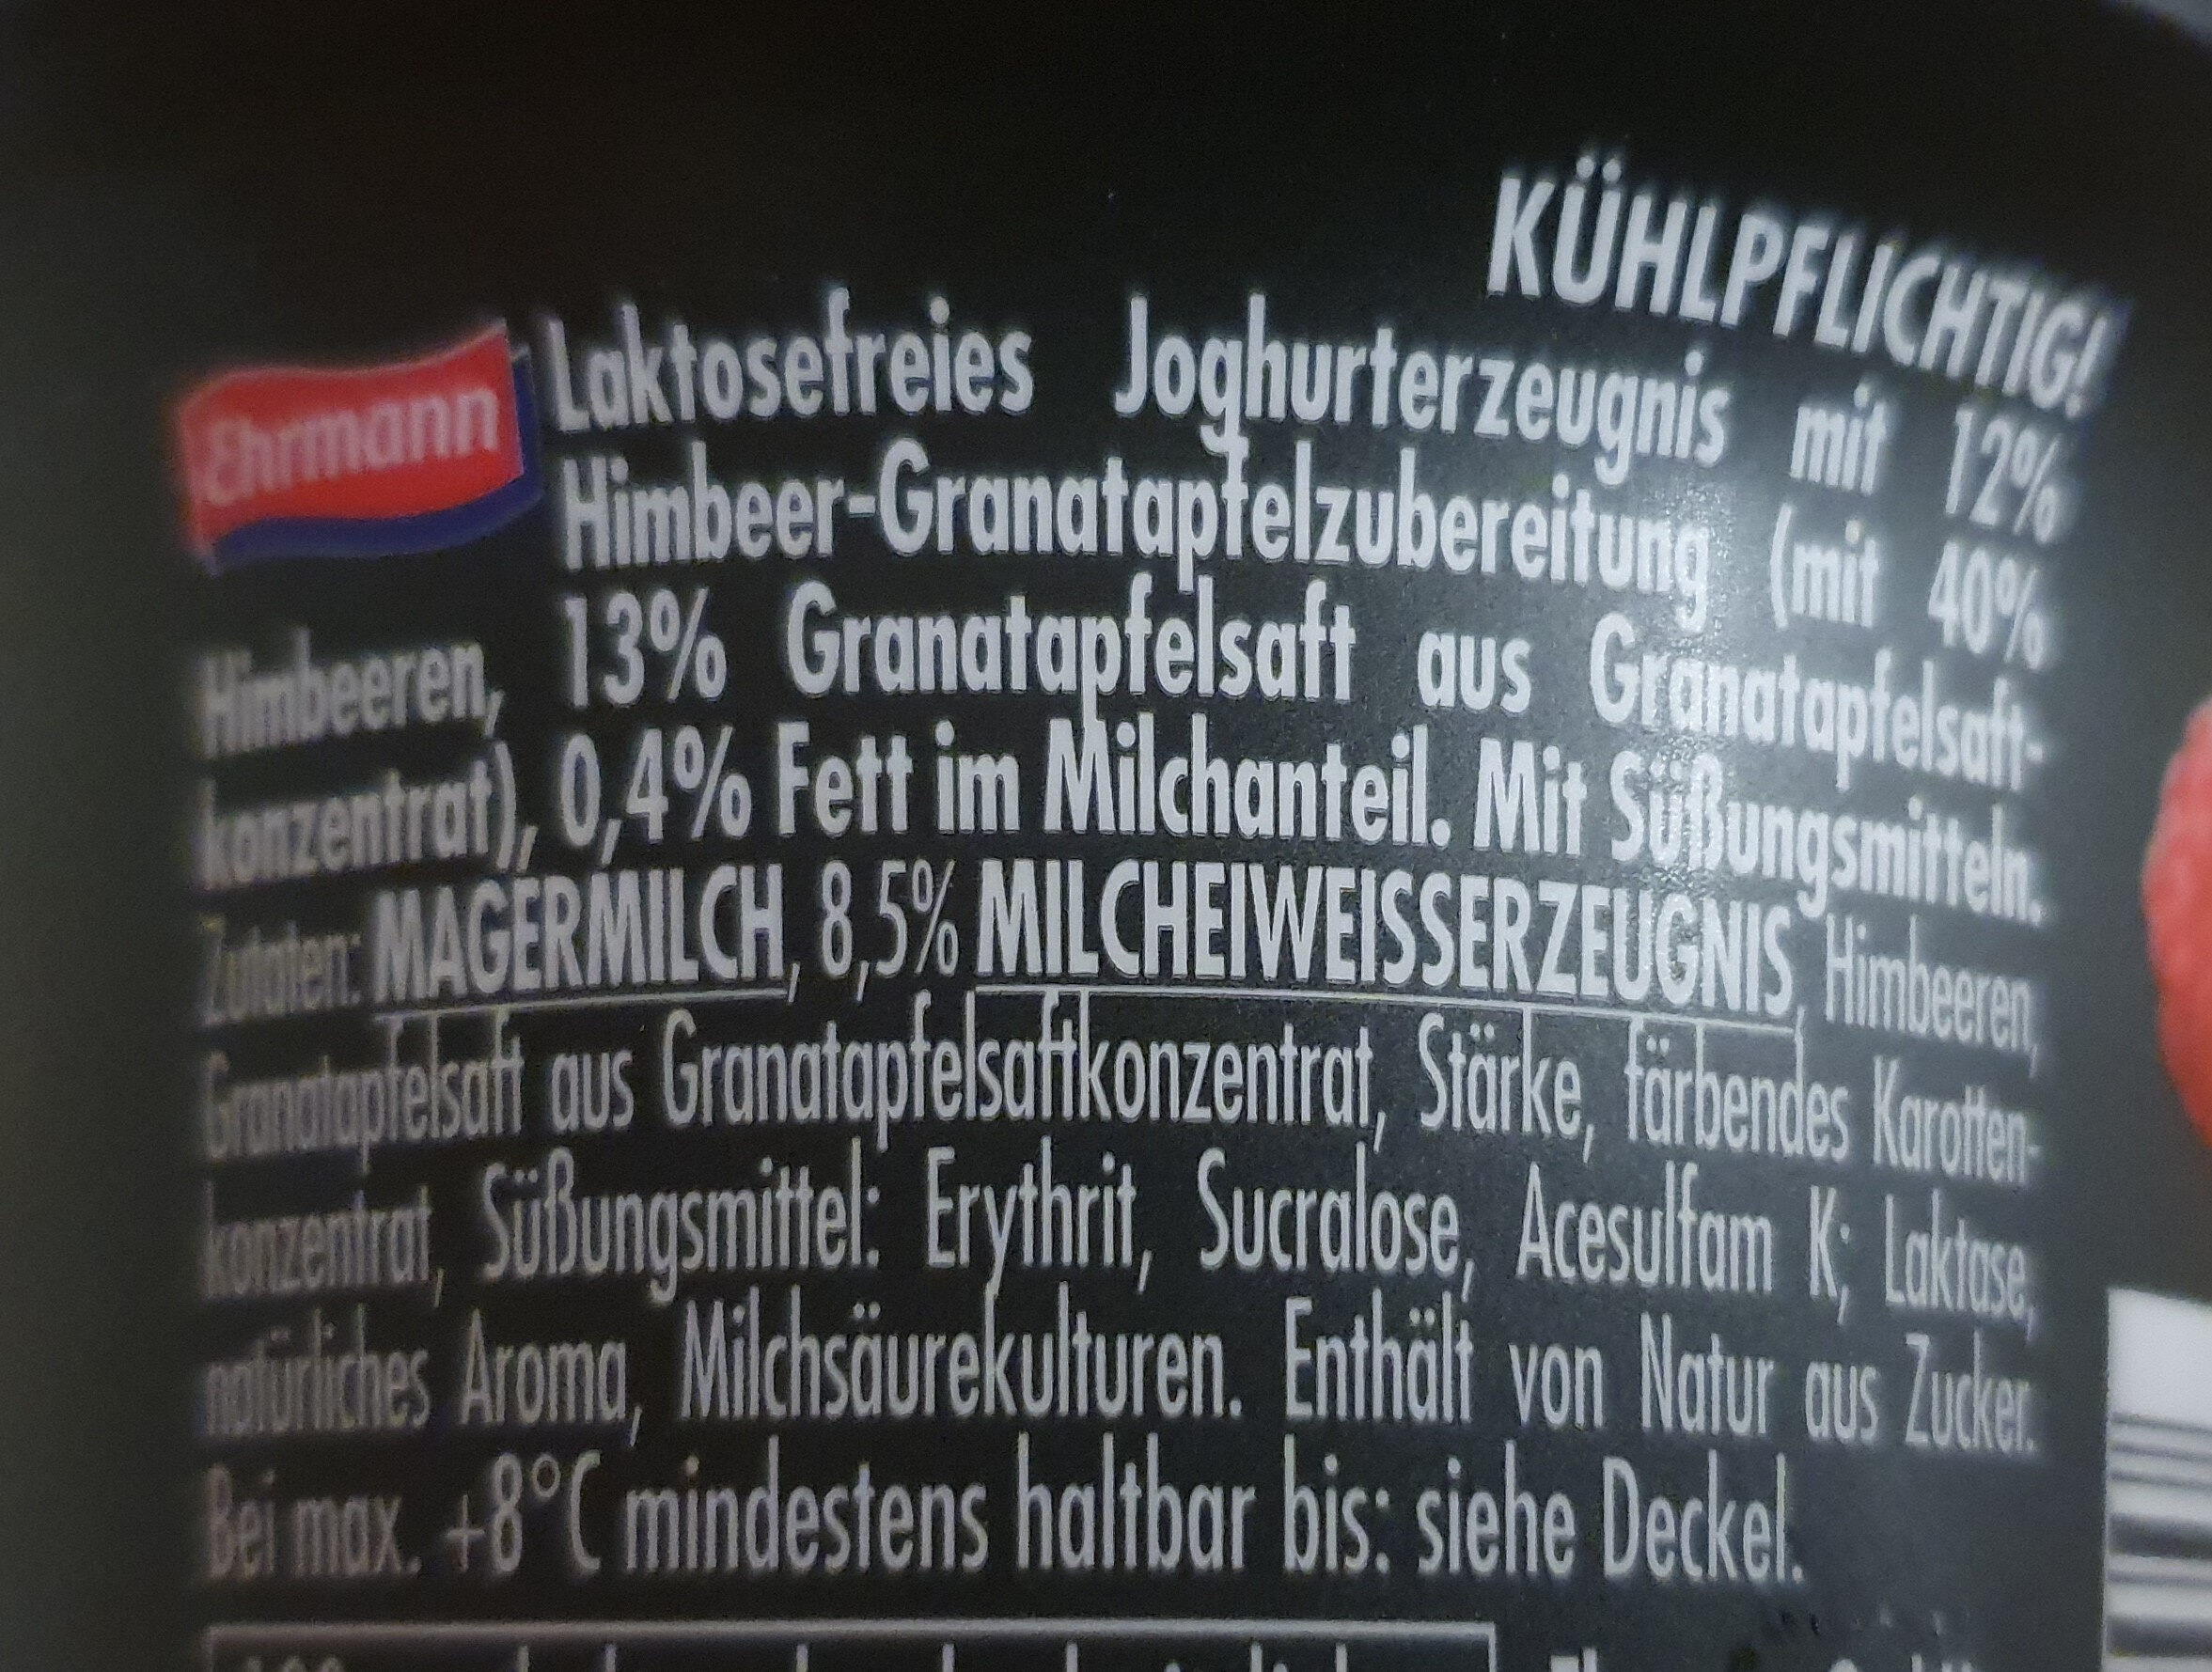 High Protein Joghurterzeugnis Himbeere Granatapfel - Ingredienser - de